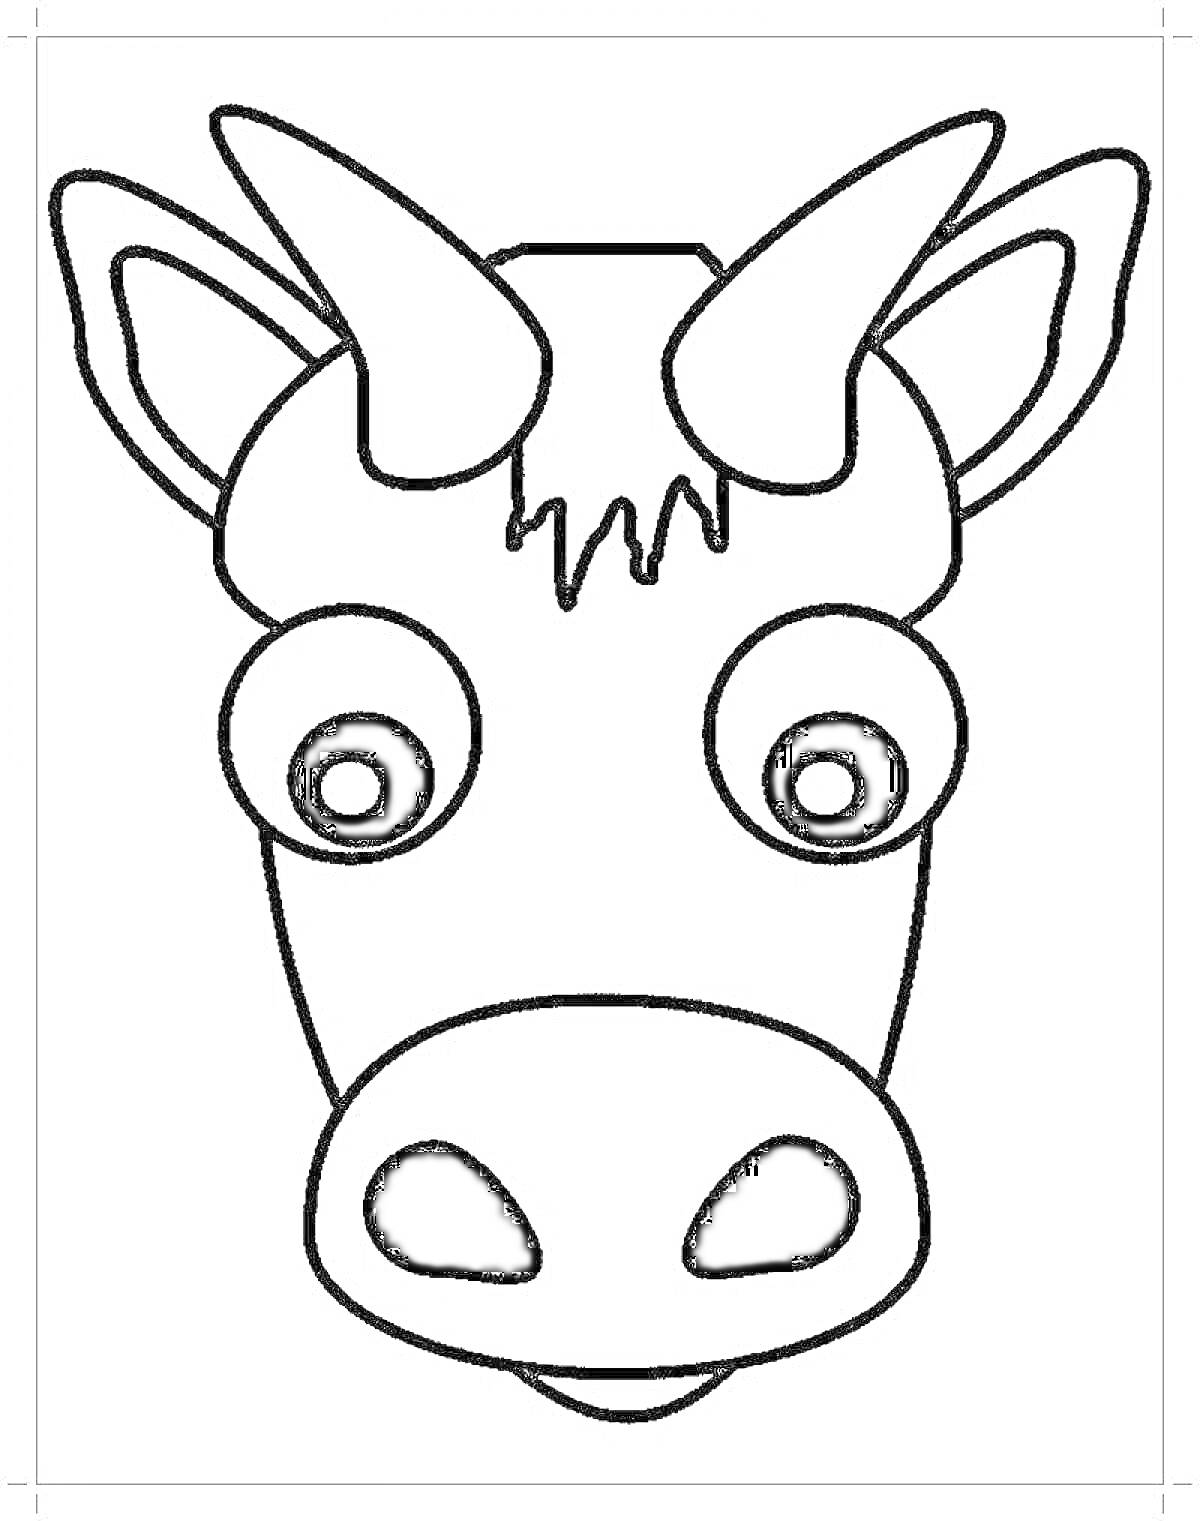 Раскраска Голова коровы с большими глазами, рогами и ушами, контур